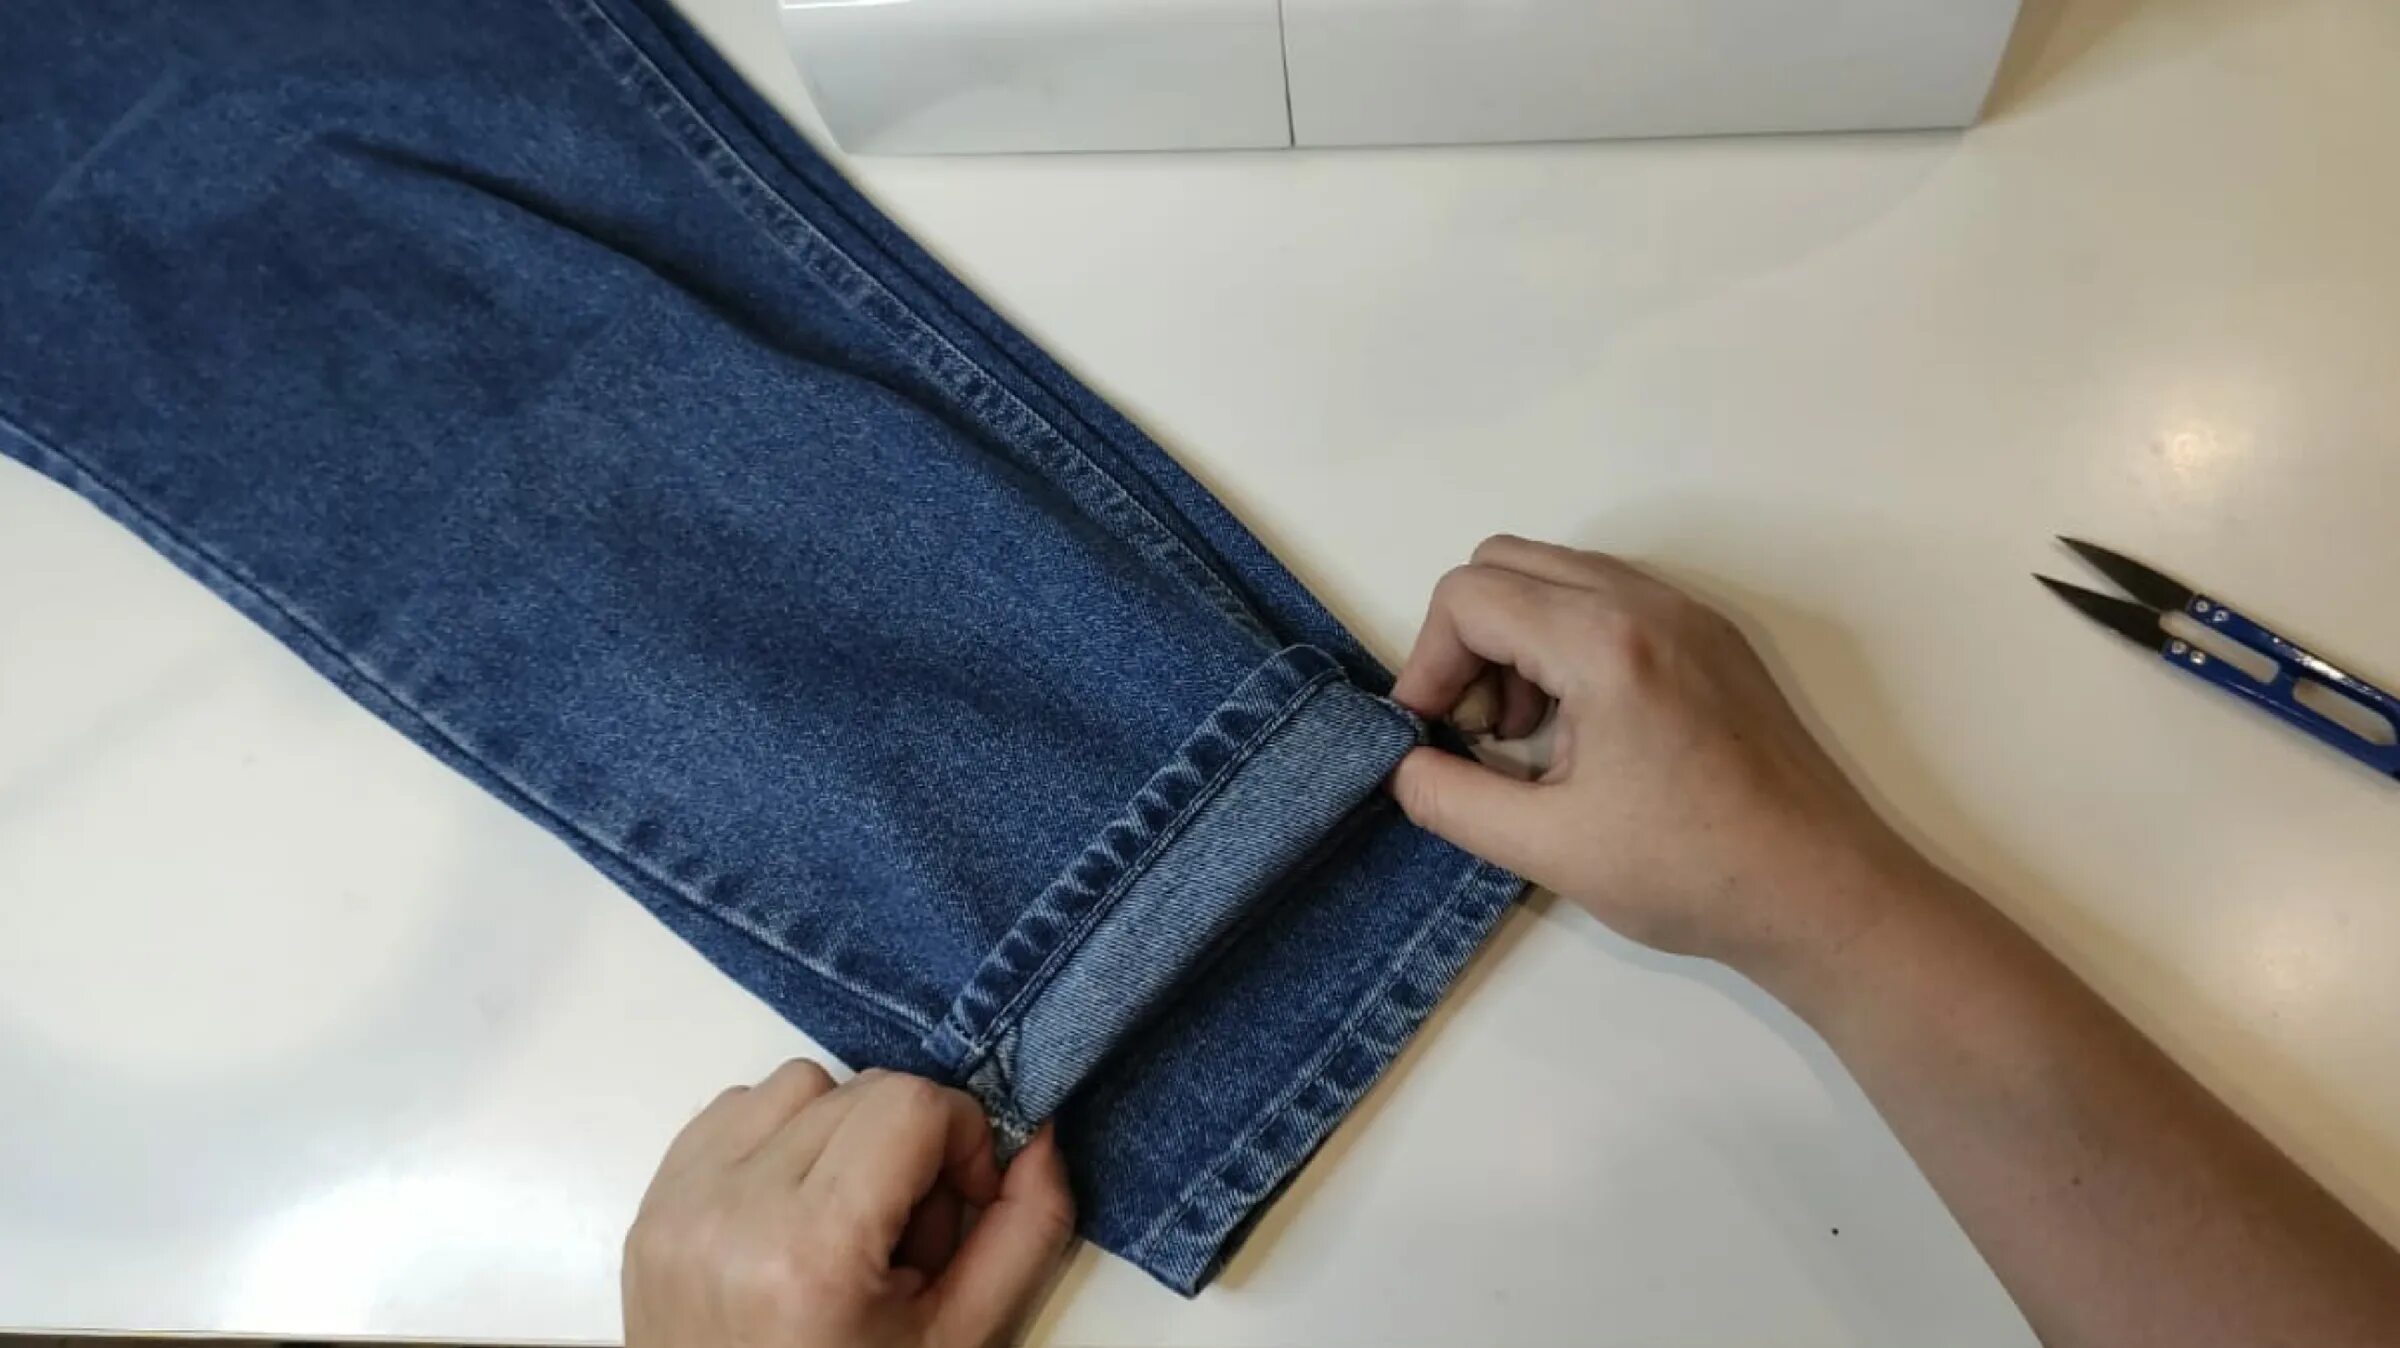 Видео как подшить джинсы с сохранением фабричного. Укорачивание джинс. Джинсы на подшивку. Подшить джинсы. Подгибка джинс с сохранением фабричного шва.